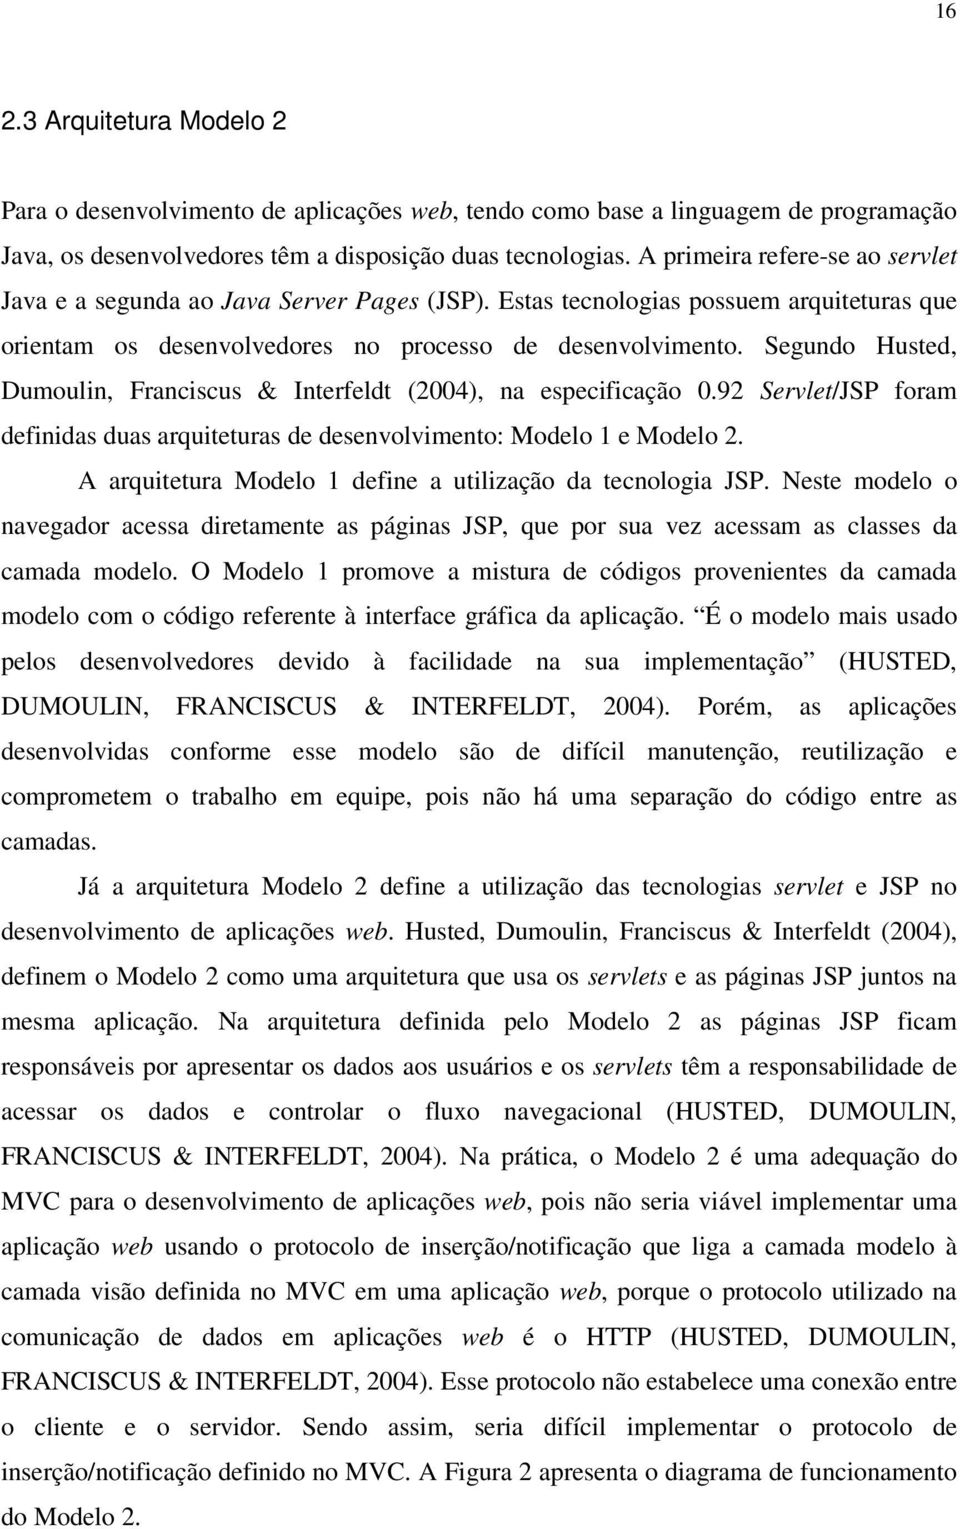 Segundo Husted, Dumoulin, Franciscus & Interfeldt (2004), na especificação 0.92 Servlet/JSP foram definidas duas arquiteturas de desenvolvimento: Modelo 1 e Modelo 2.